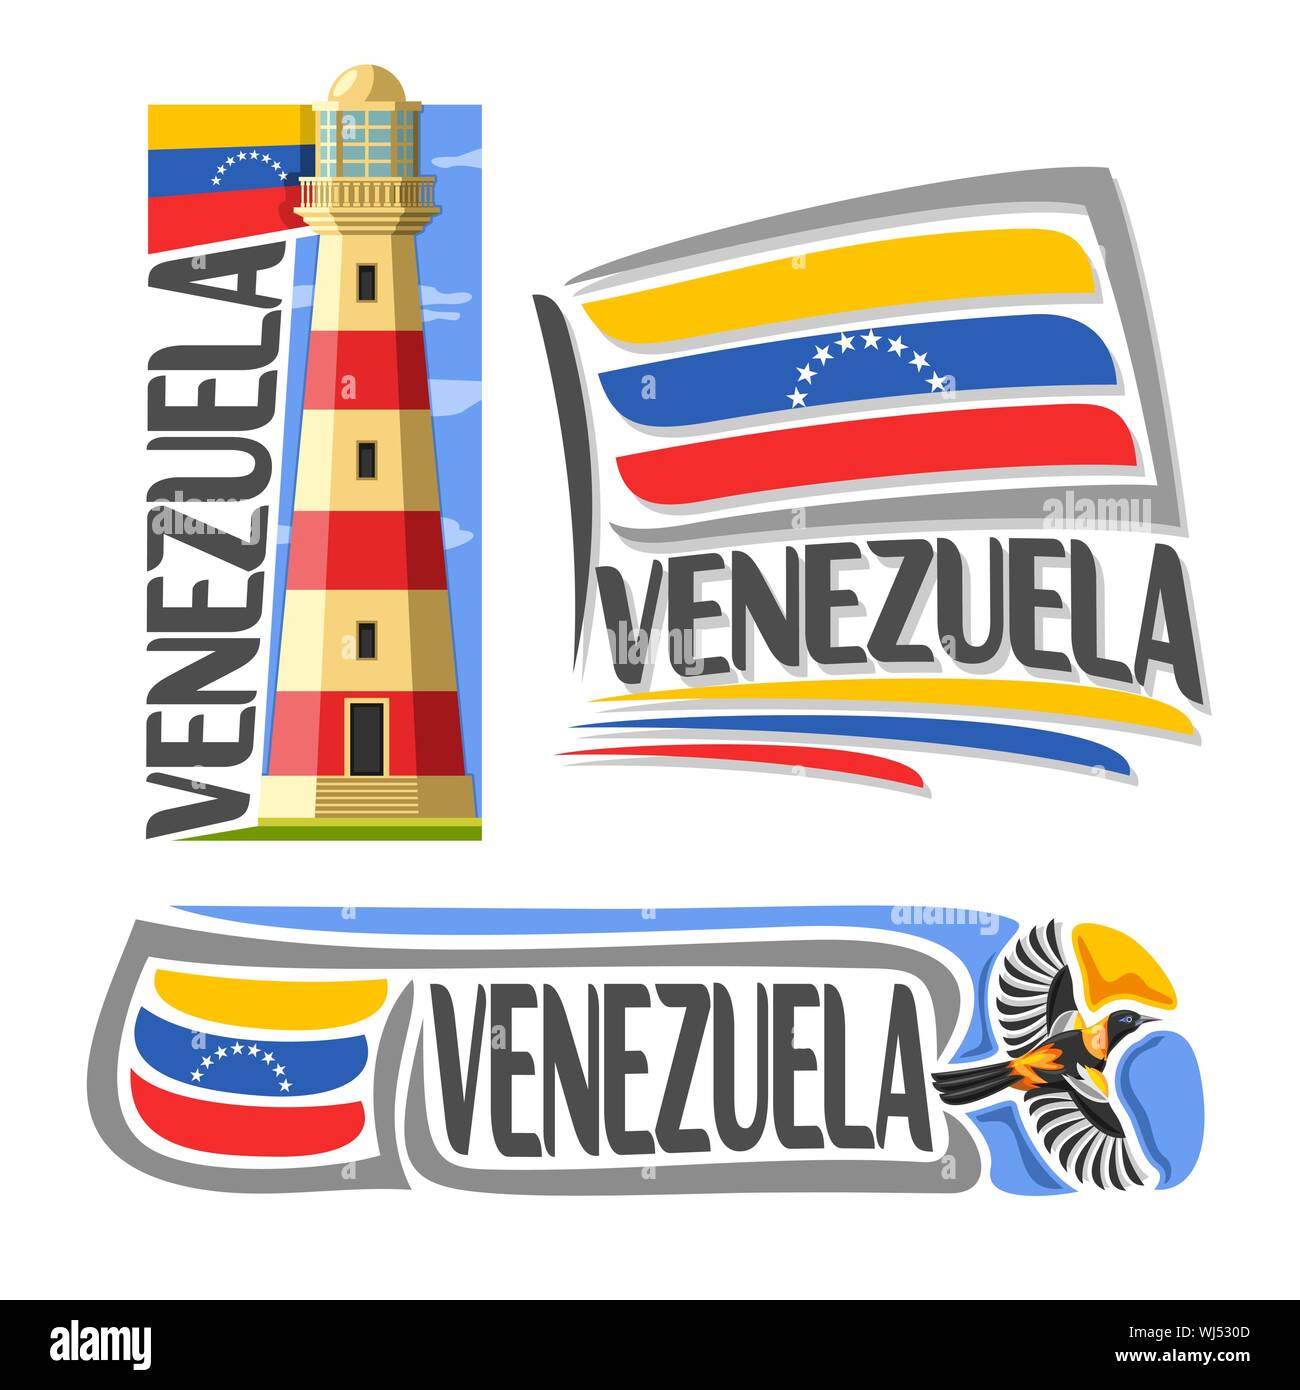 Il logo del vettore per il Venezuela, 3 isolato immagini: Isla Margarita faro su sfondo di stato nazionale Bandiera e battenti troupial venezuelano. Illustrazione Vettoriale